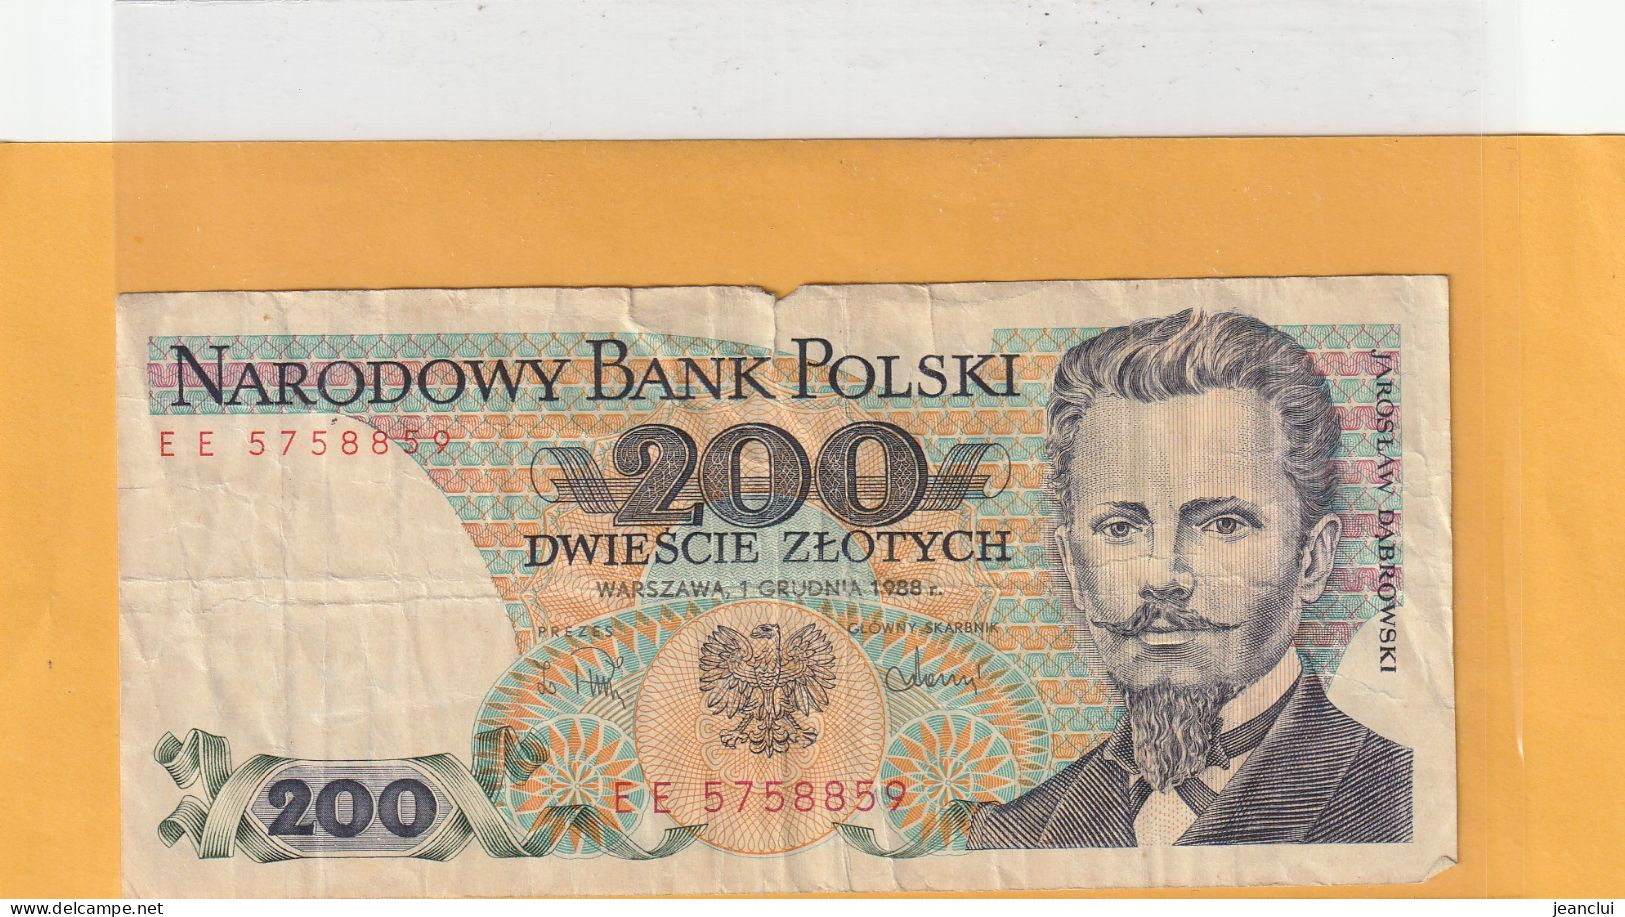 NARODOWY BANK POLSKI . 200 ZLOTYCH .  J. DABROWSKI  . 1-12-1988 .  N° EE 5758859 . 2 SCANNES  .  BILLET USITE - Polen